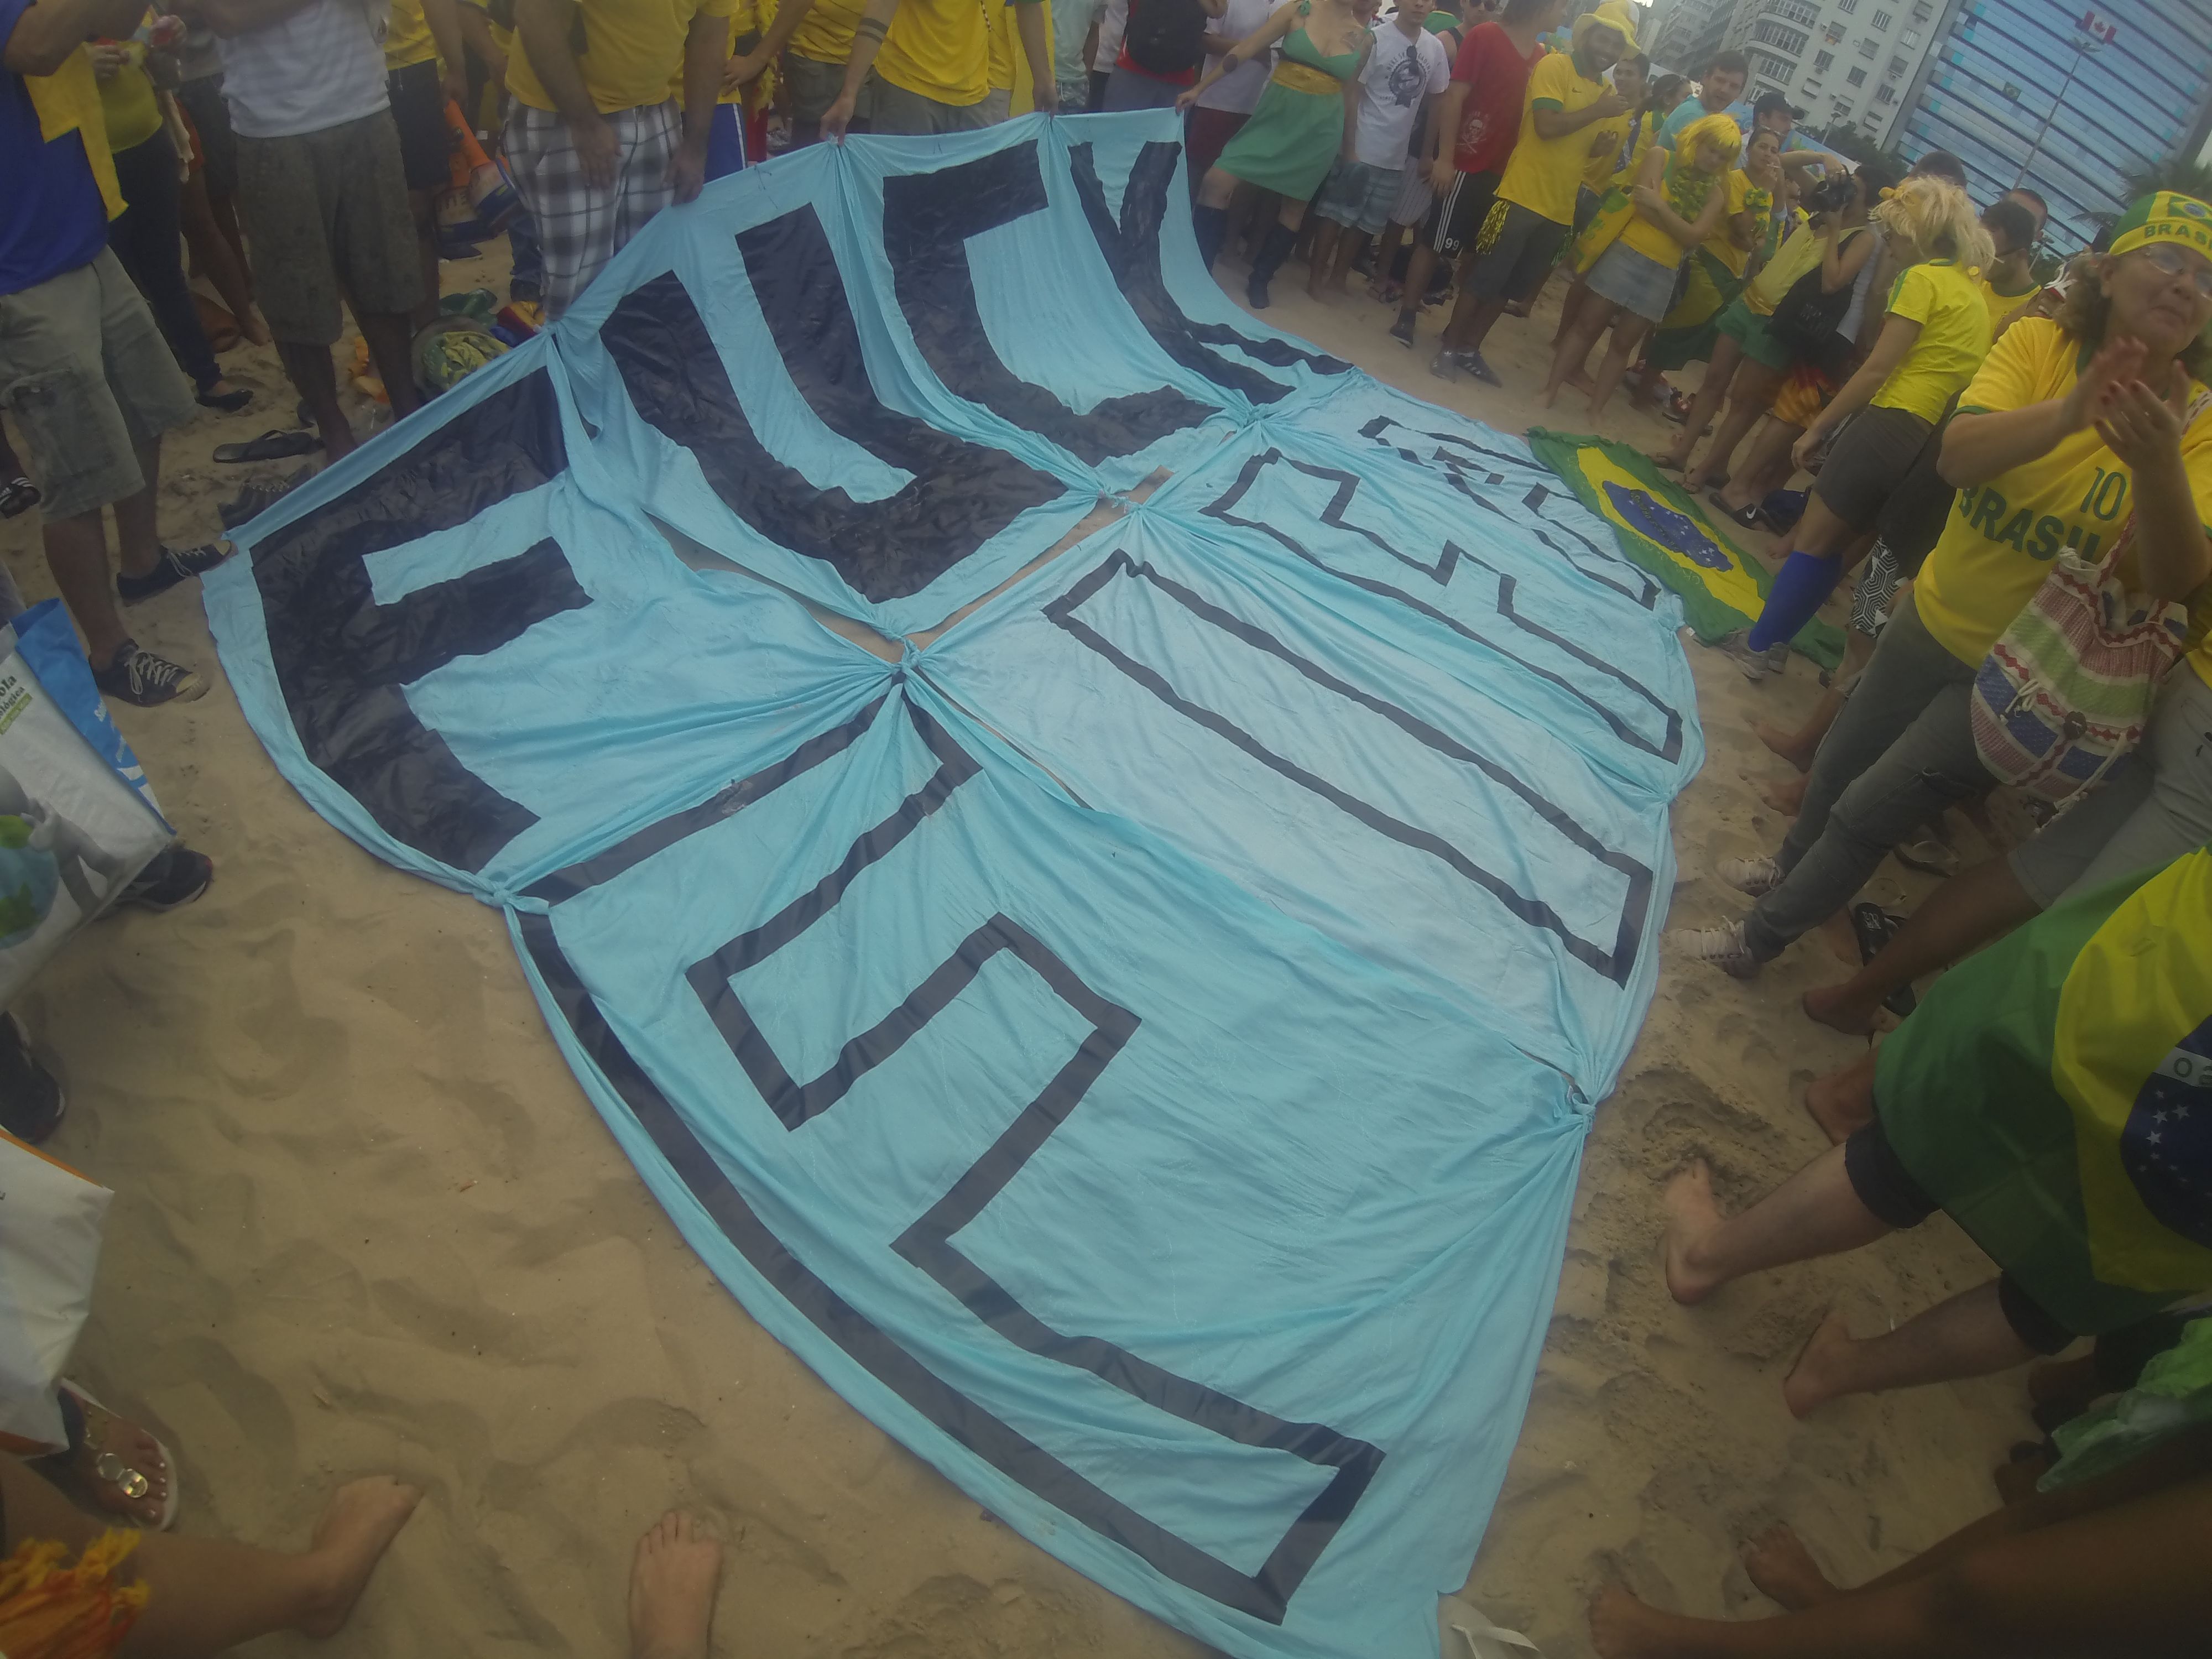 COUPE DU MONDE BRESIL 2014: Plage de Copacabana, on peut aimer le foot, l´idee du mondial et faire un gros FUCK FIFA. Au passage FU.. FFF, OUI A LUZENAC EN LIGUE2.